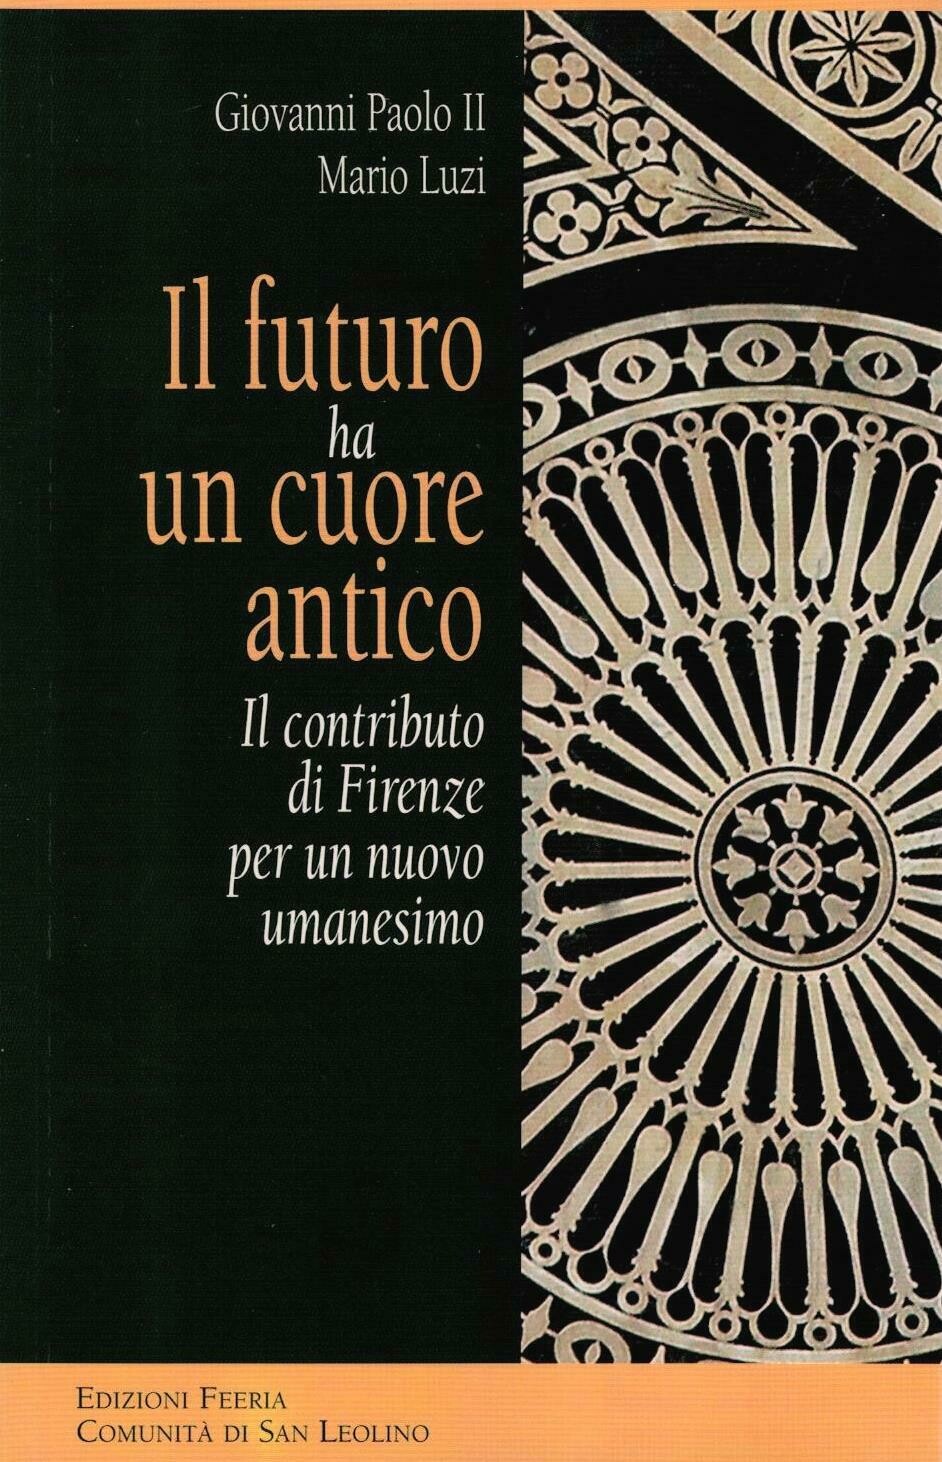 Il futuro ha un cuore antico (Giovanni Paolo II - Mario Luzi)